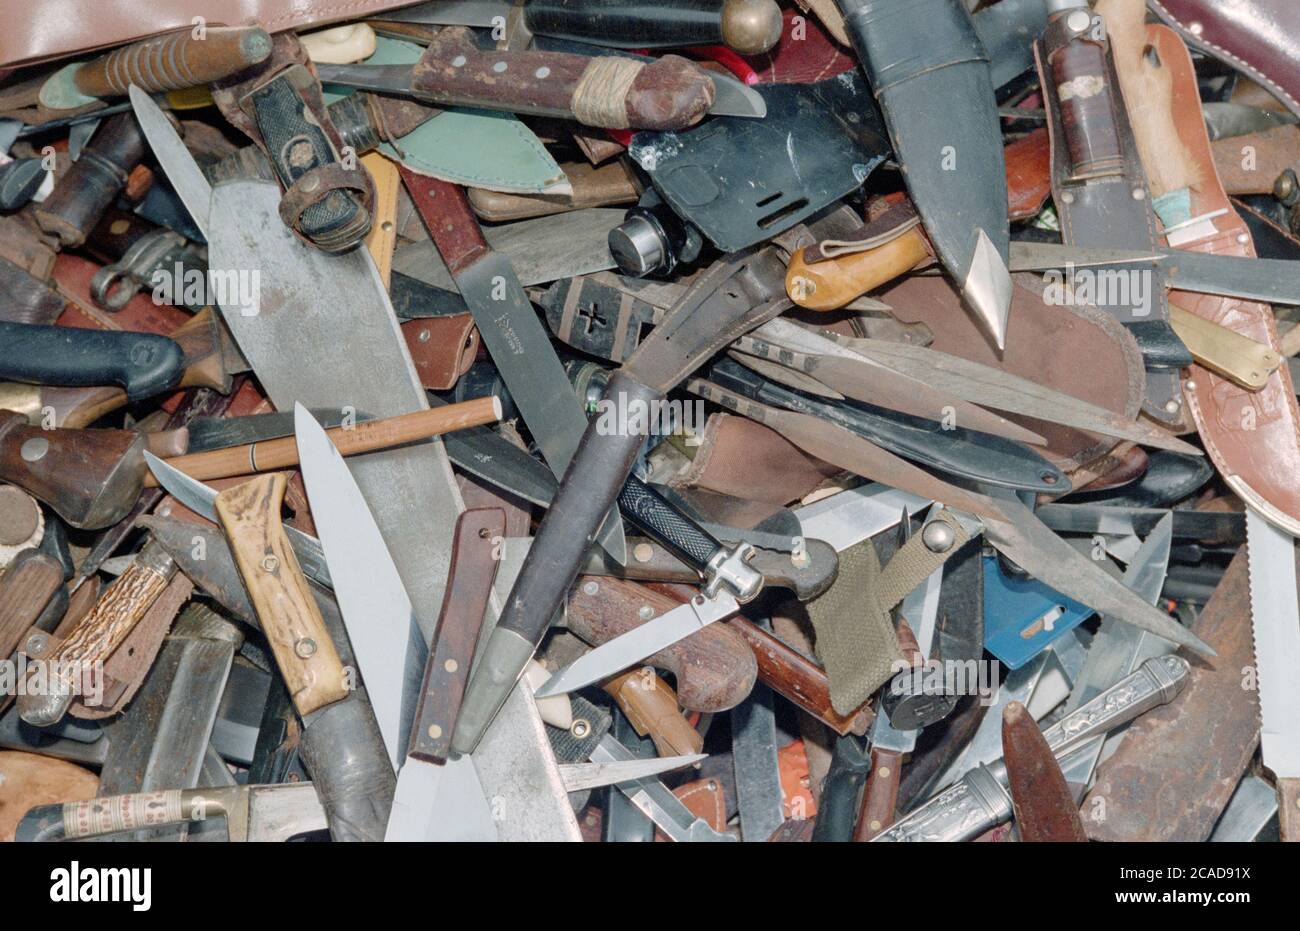 Messer und Klingen, die der lokalen Presse ausgestellt wurden, wurden als Ergebnis einer Messeramnestie durch Hampshire Constabulary, Hampshire, England, Großbritannien, übergeben Stockfoto